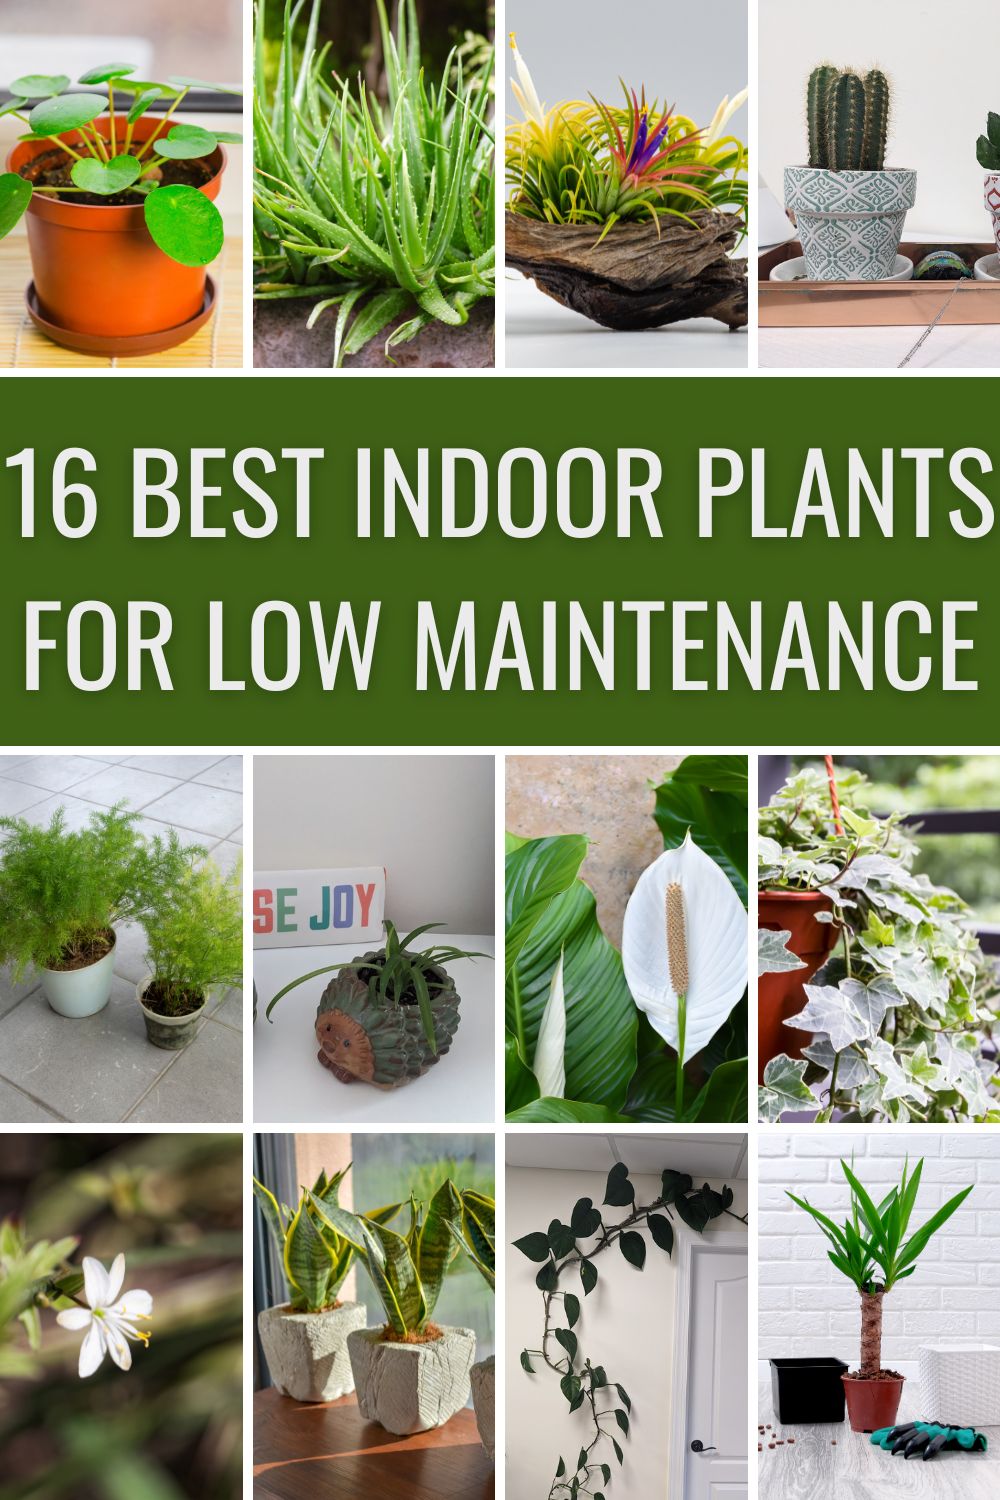 Best indoor plants for low maintenance.